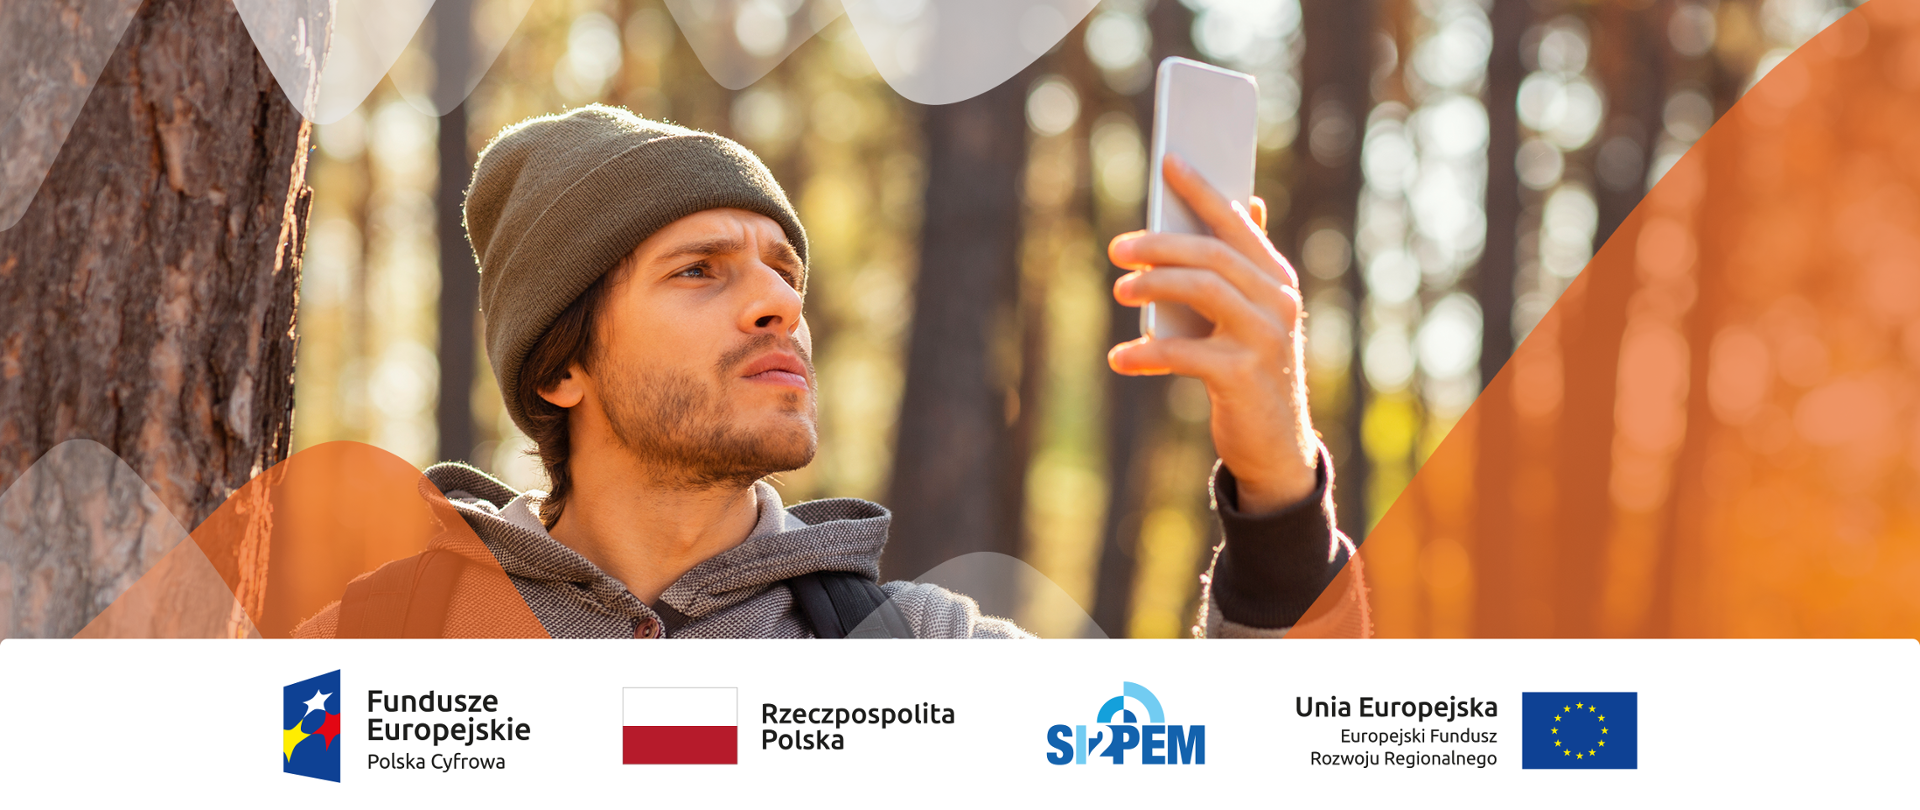 Grafika ze zdjęciem przedstawiającym mężczyznę trzymającego smartfon. Logo Fundusze Europejskie, logo Rzeczpospolita Polska, logo SI2PEM, logo Unia Europejska